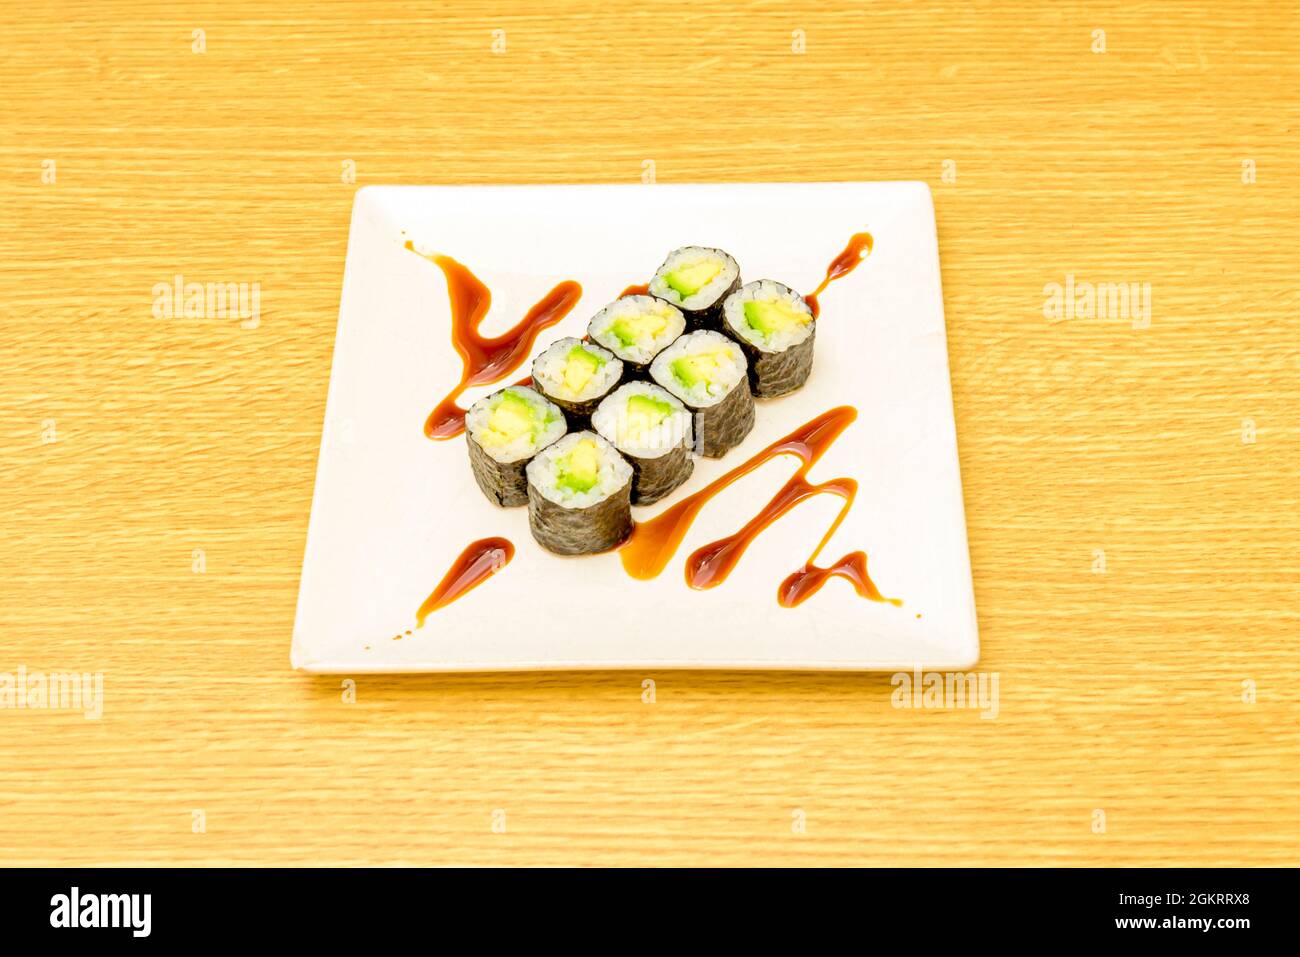 Ocho piezas de sushi maki de aguacate maduro con arroz japones, algas nori y salsa de soja Stock Photo